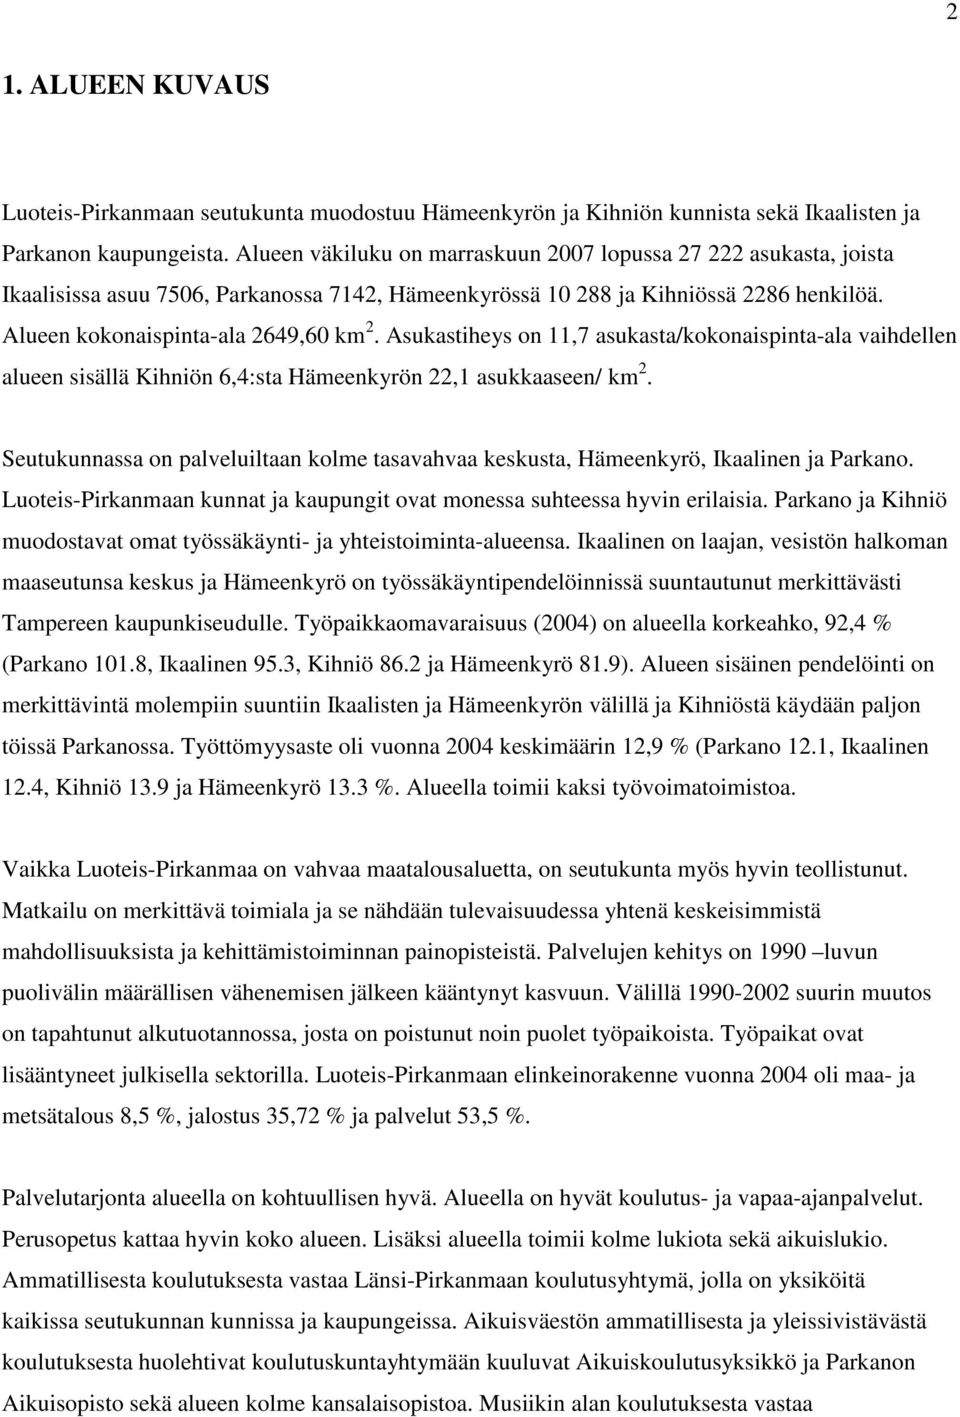 Asukastiheys on 11,7 asukasta/kokonaispinta-ala vaihdellen alueen sisällä Kihniön 6,4:sta Hämeenkyrön 22,1 asukkaaseen/ km 2.